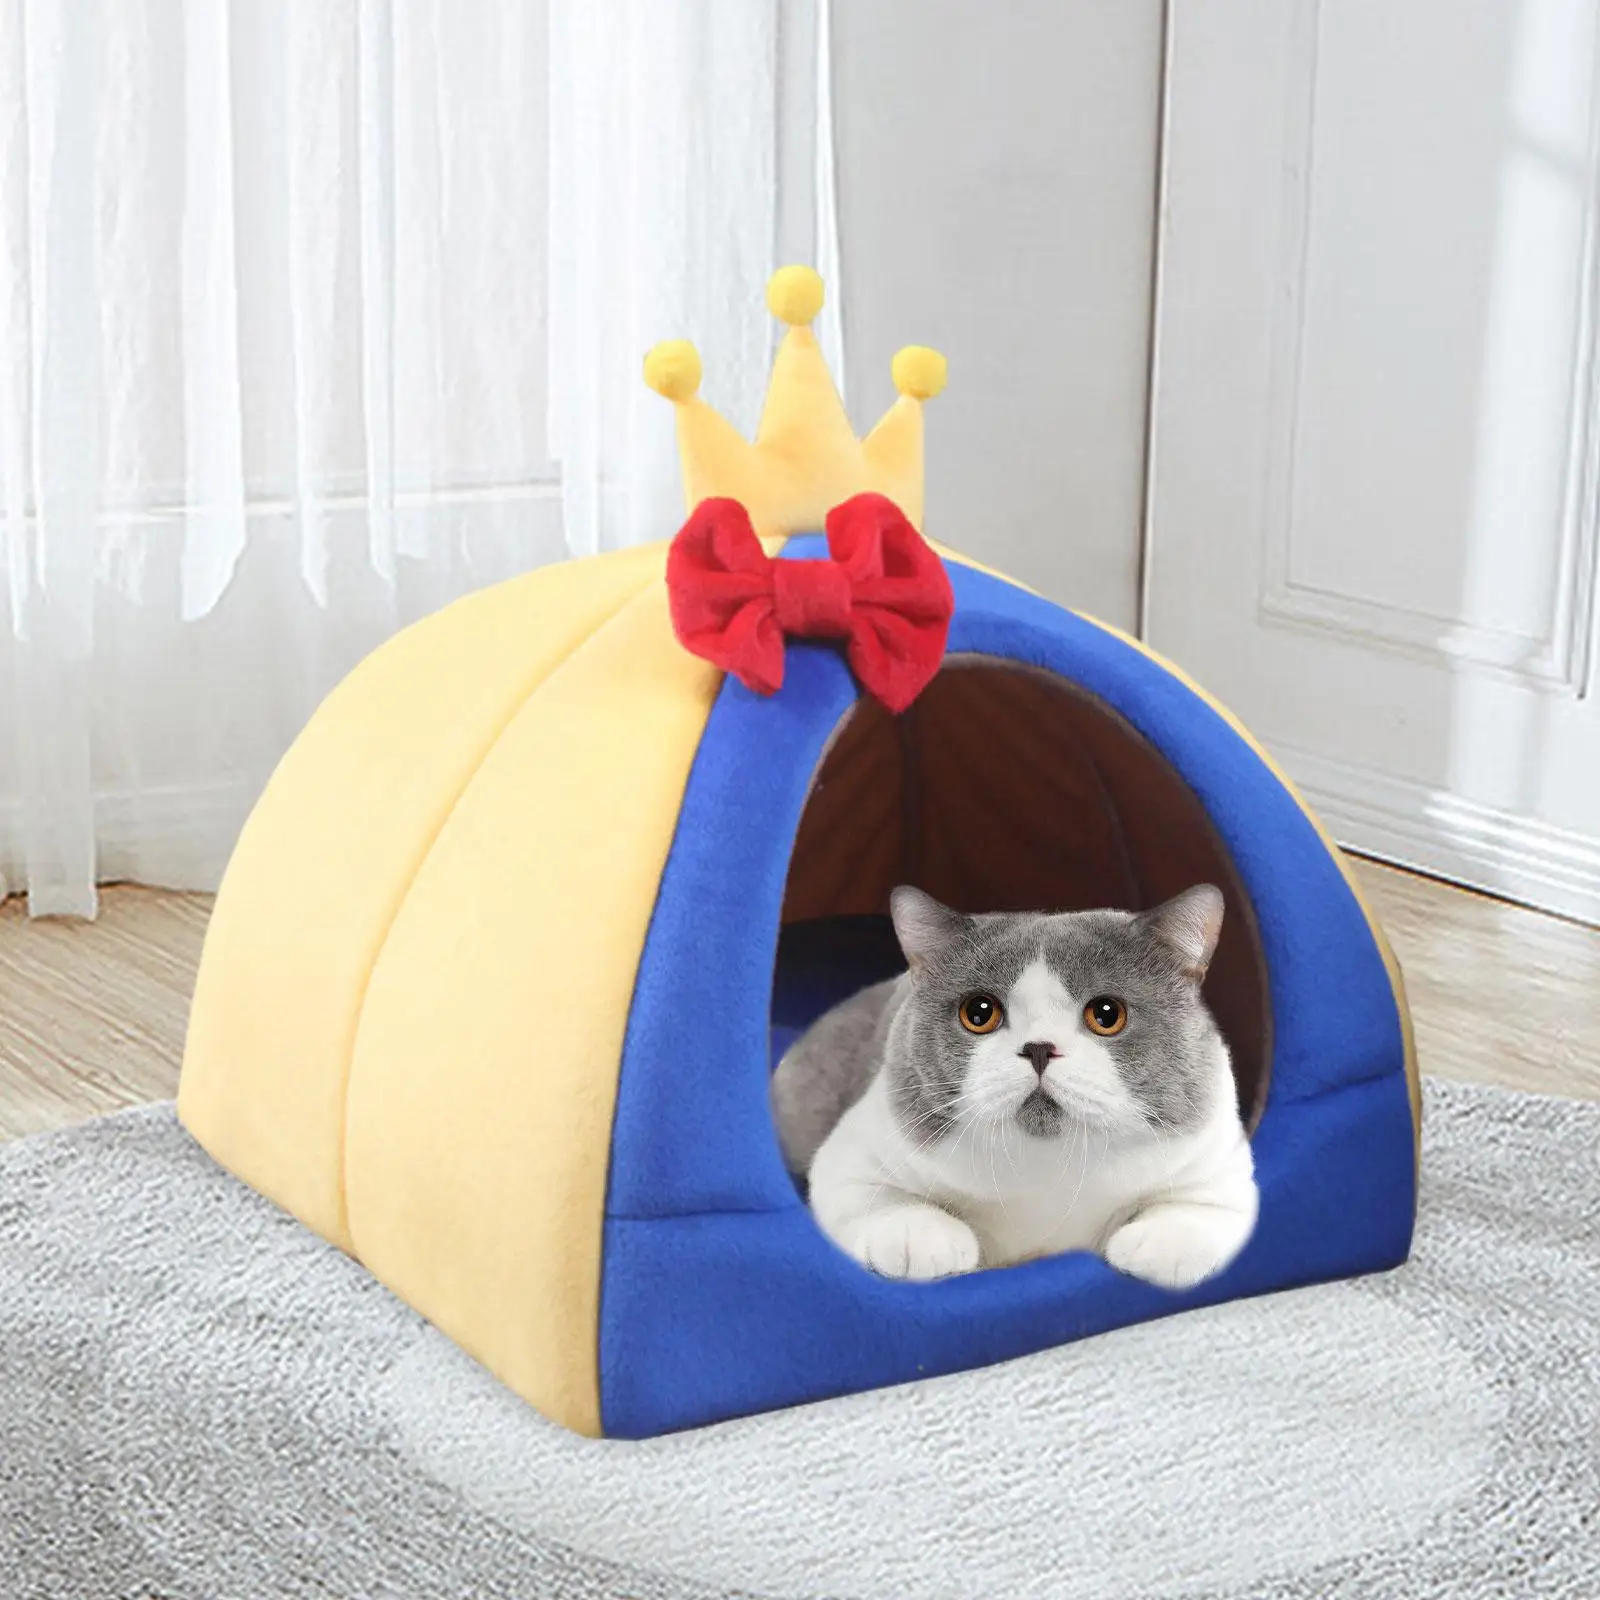 Cat Pet Tent House Kitten House Puppy Sleeping Bed Comfortable Indoor Bed